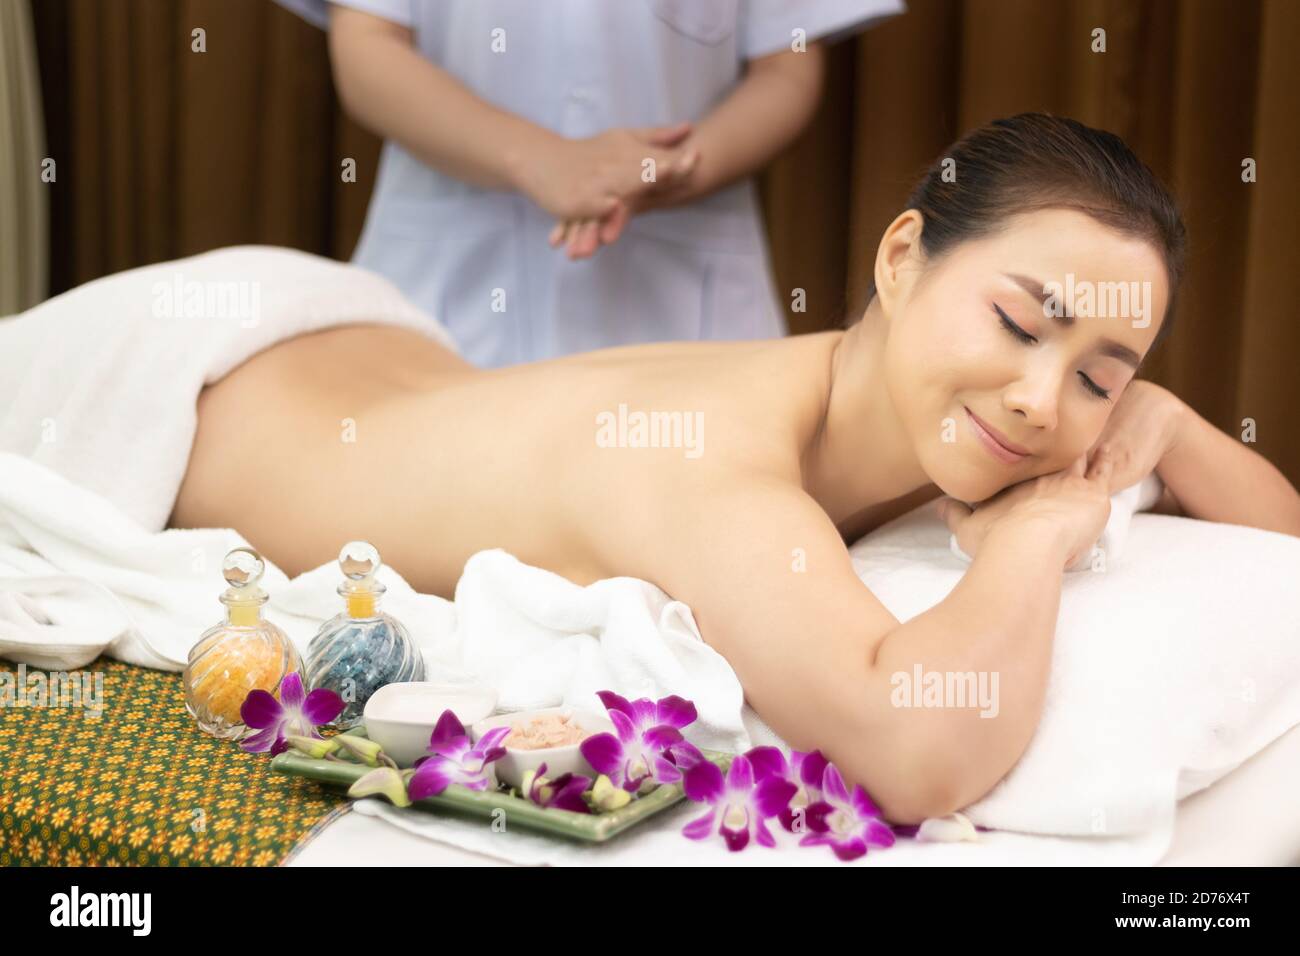 Schöne junge entspannen asiatische Frau auf Massageliege mit nackten Körper Rücken, Masseur bereiten Öl-Massage auf der Rückseite im Beauty-Spa Salon Behandlung Stockfoto